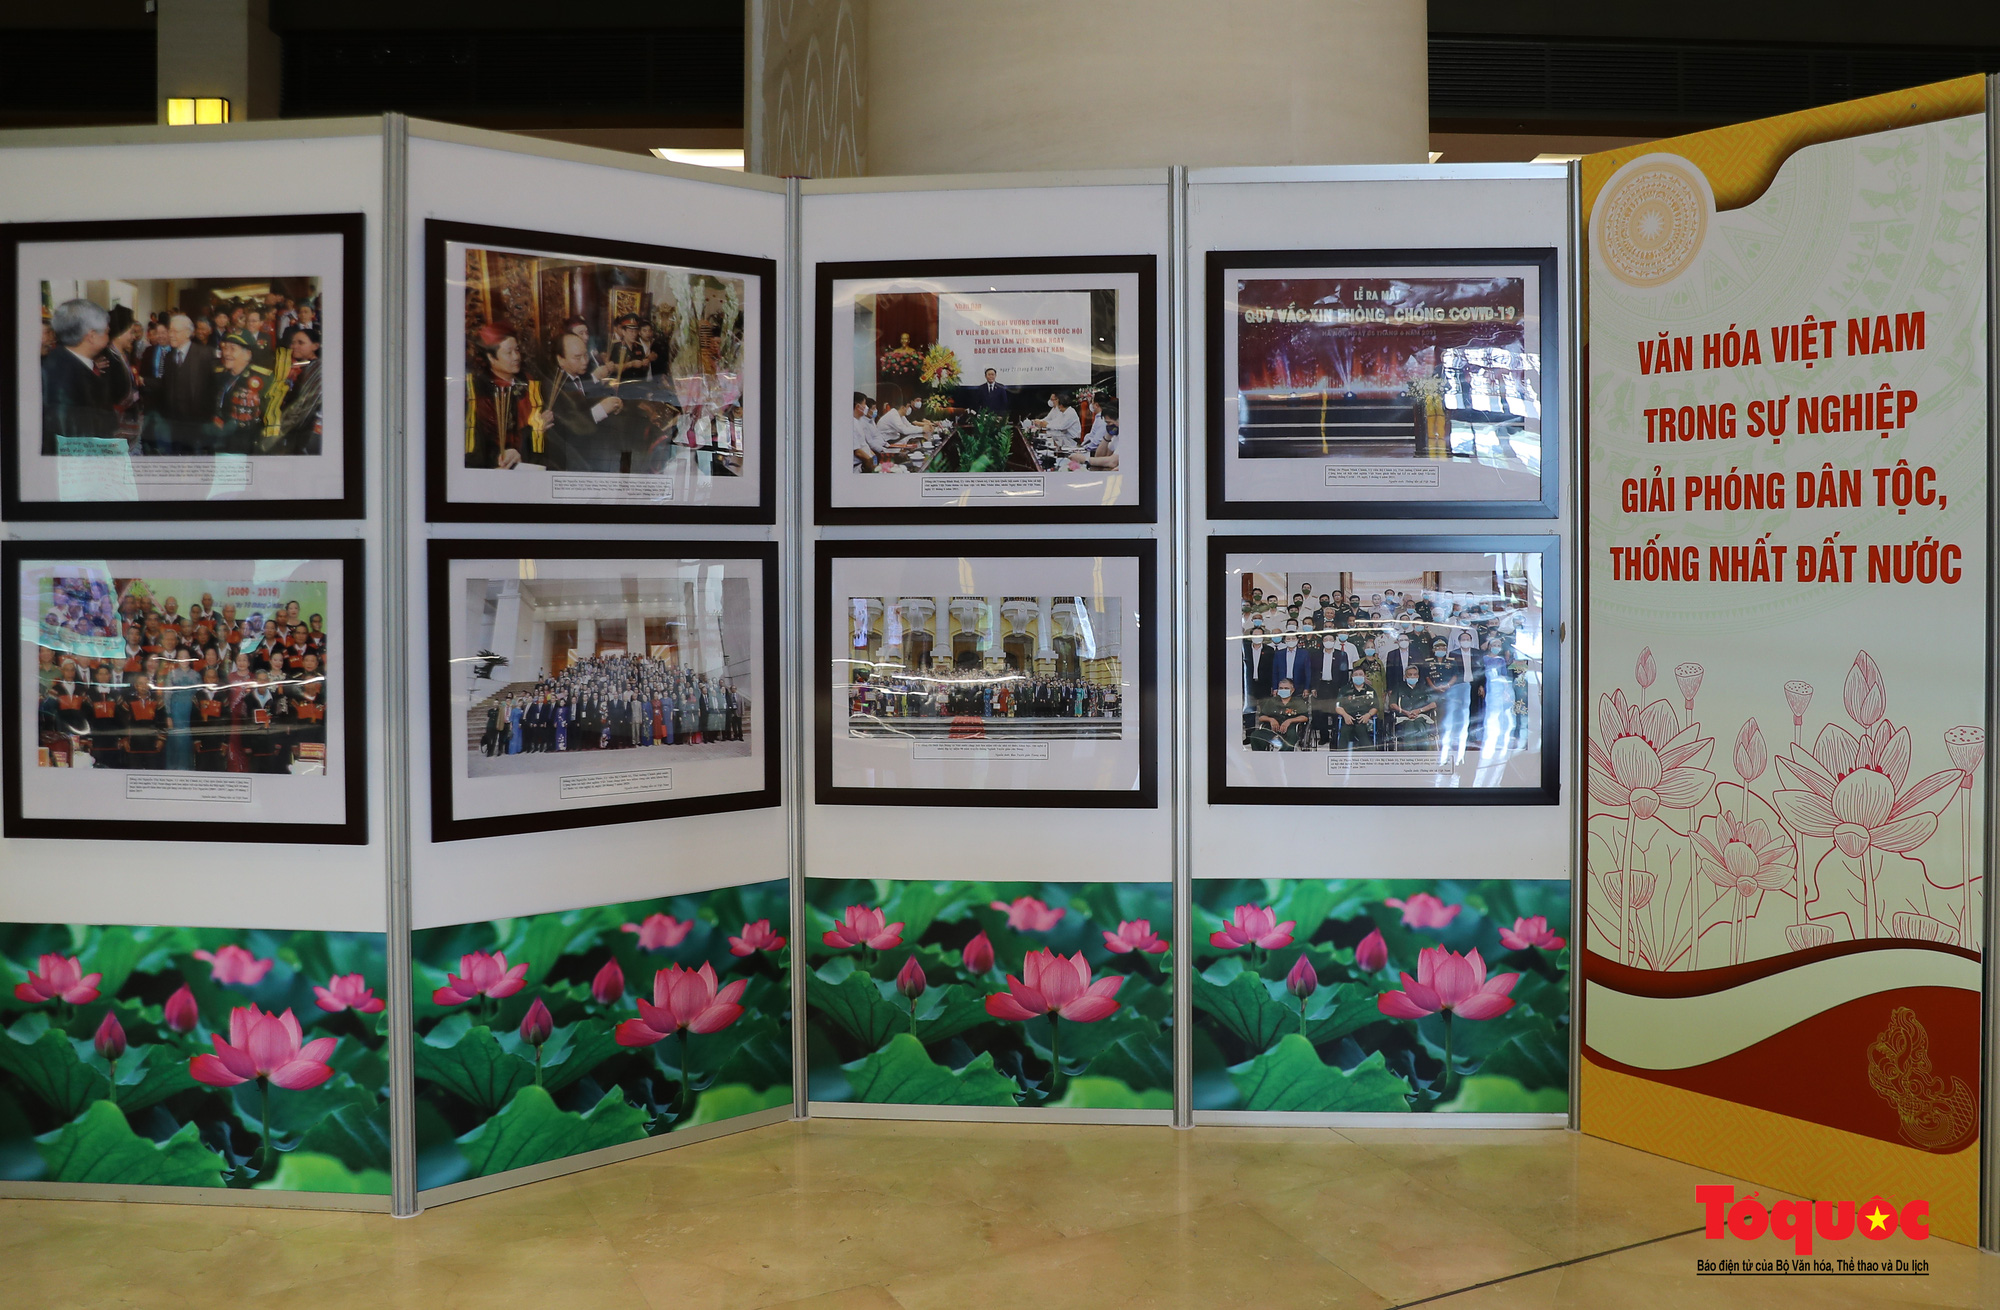 Triển lãm “Văn hóa soi đường cho quốc dân đi” trưng bày 320 tác phẩm ảnh nghệ thuật tiêu biểu - Ảnh 9.